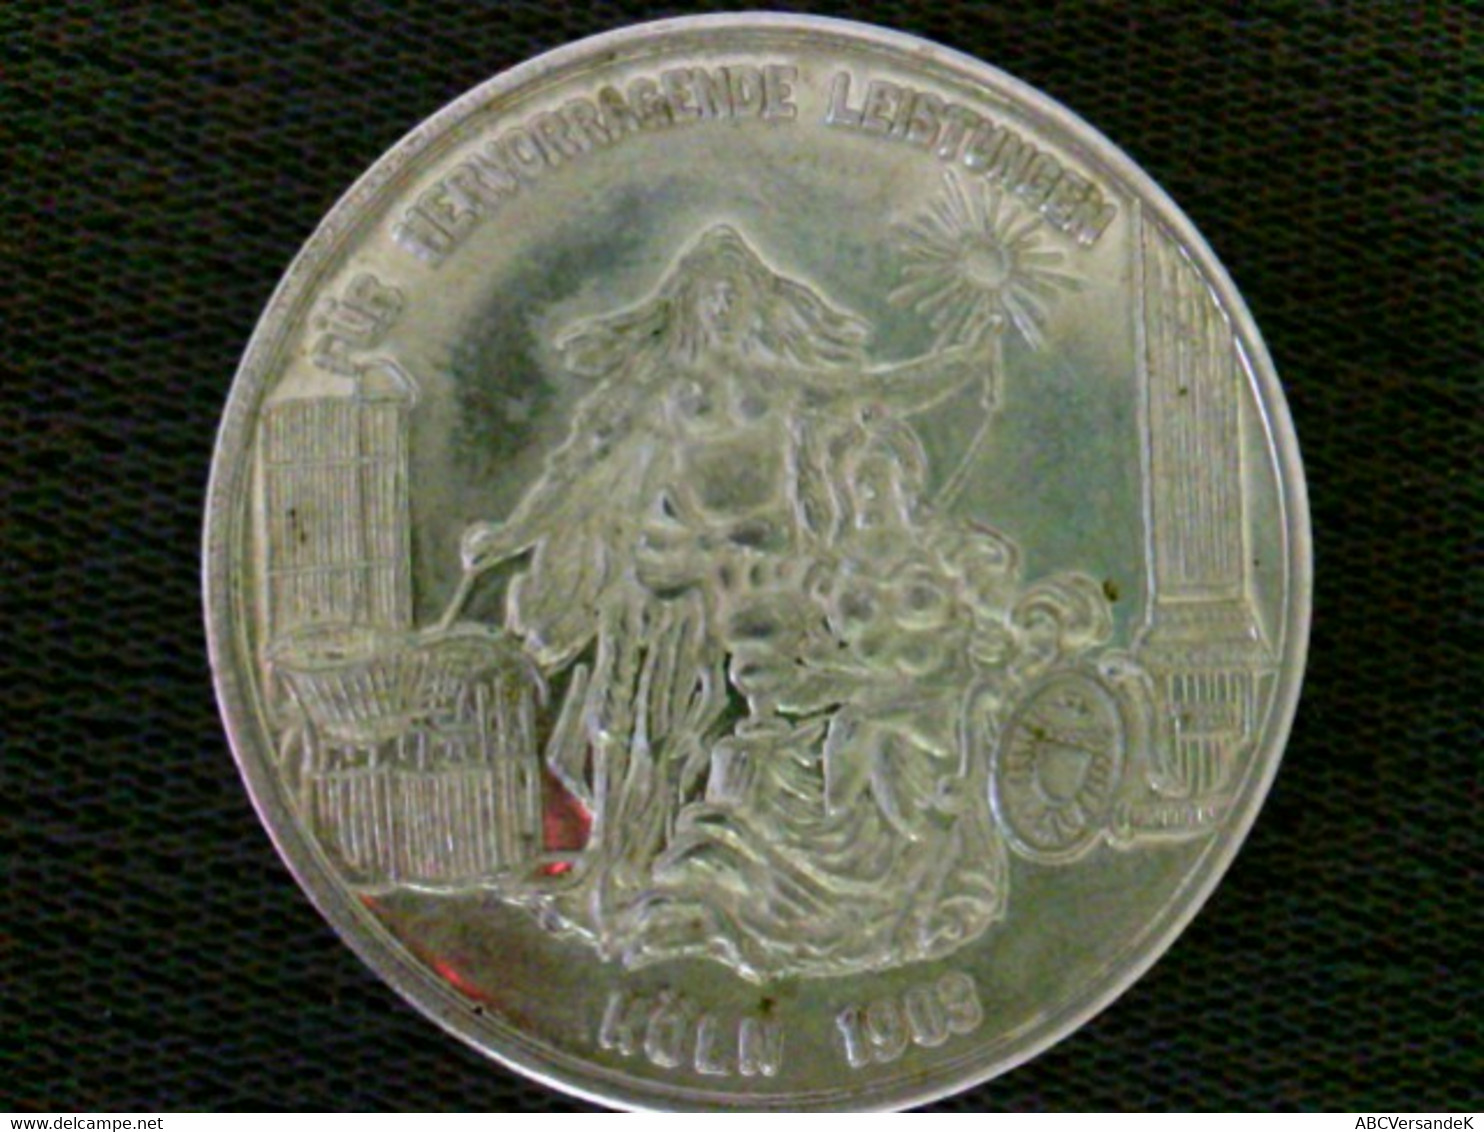 Münze/ Medaille: Silbermünze Freie Vereinigung Deutscher Installateure/ Für Hervorragende Leistungen, Köln 190 - Numismatiek